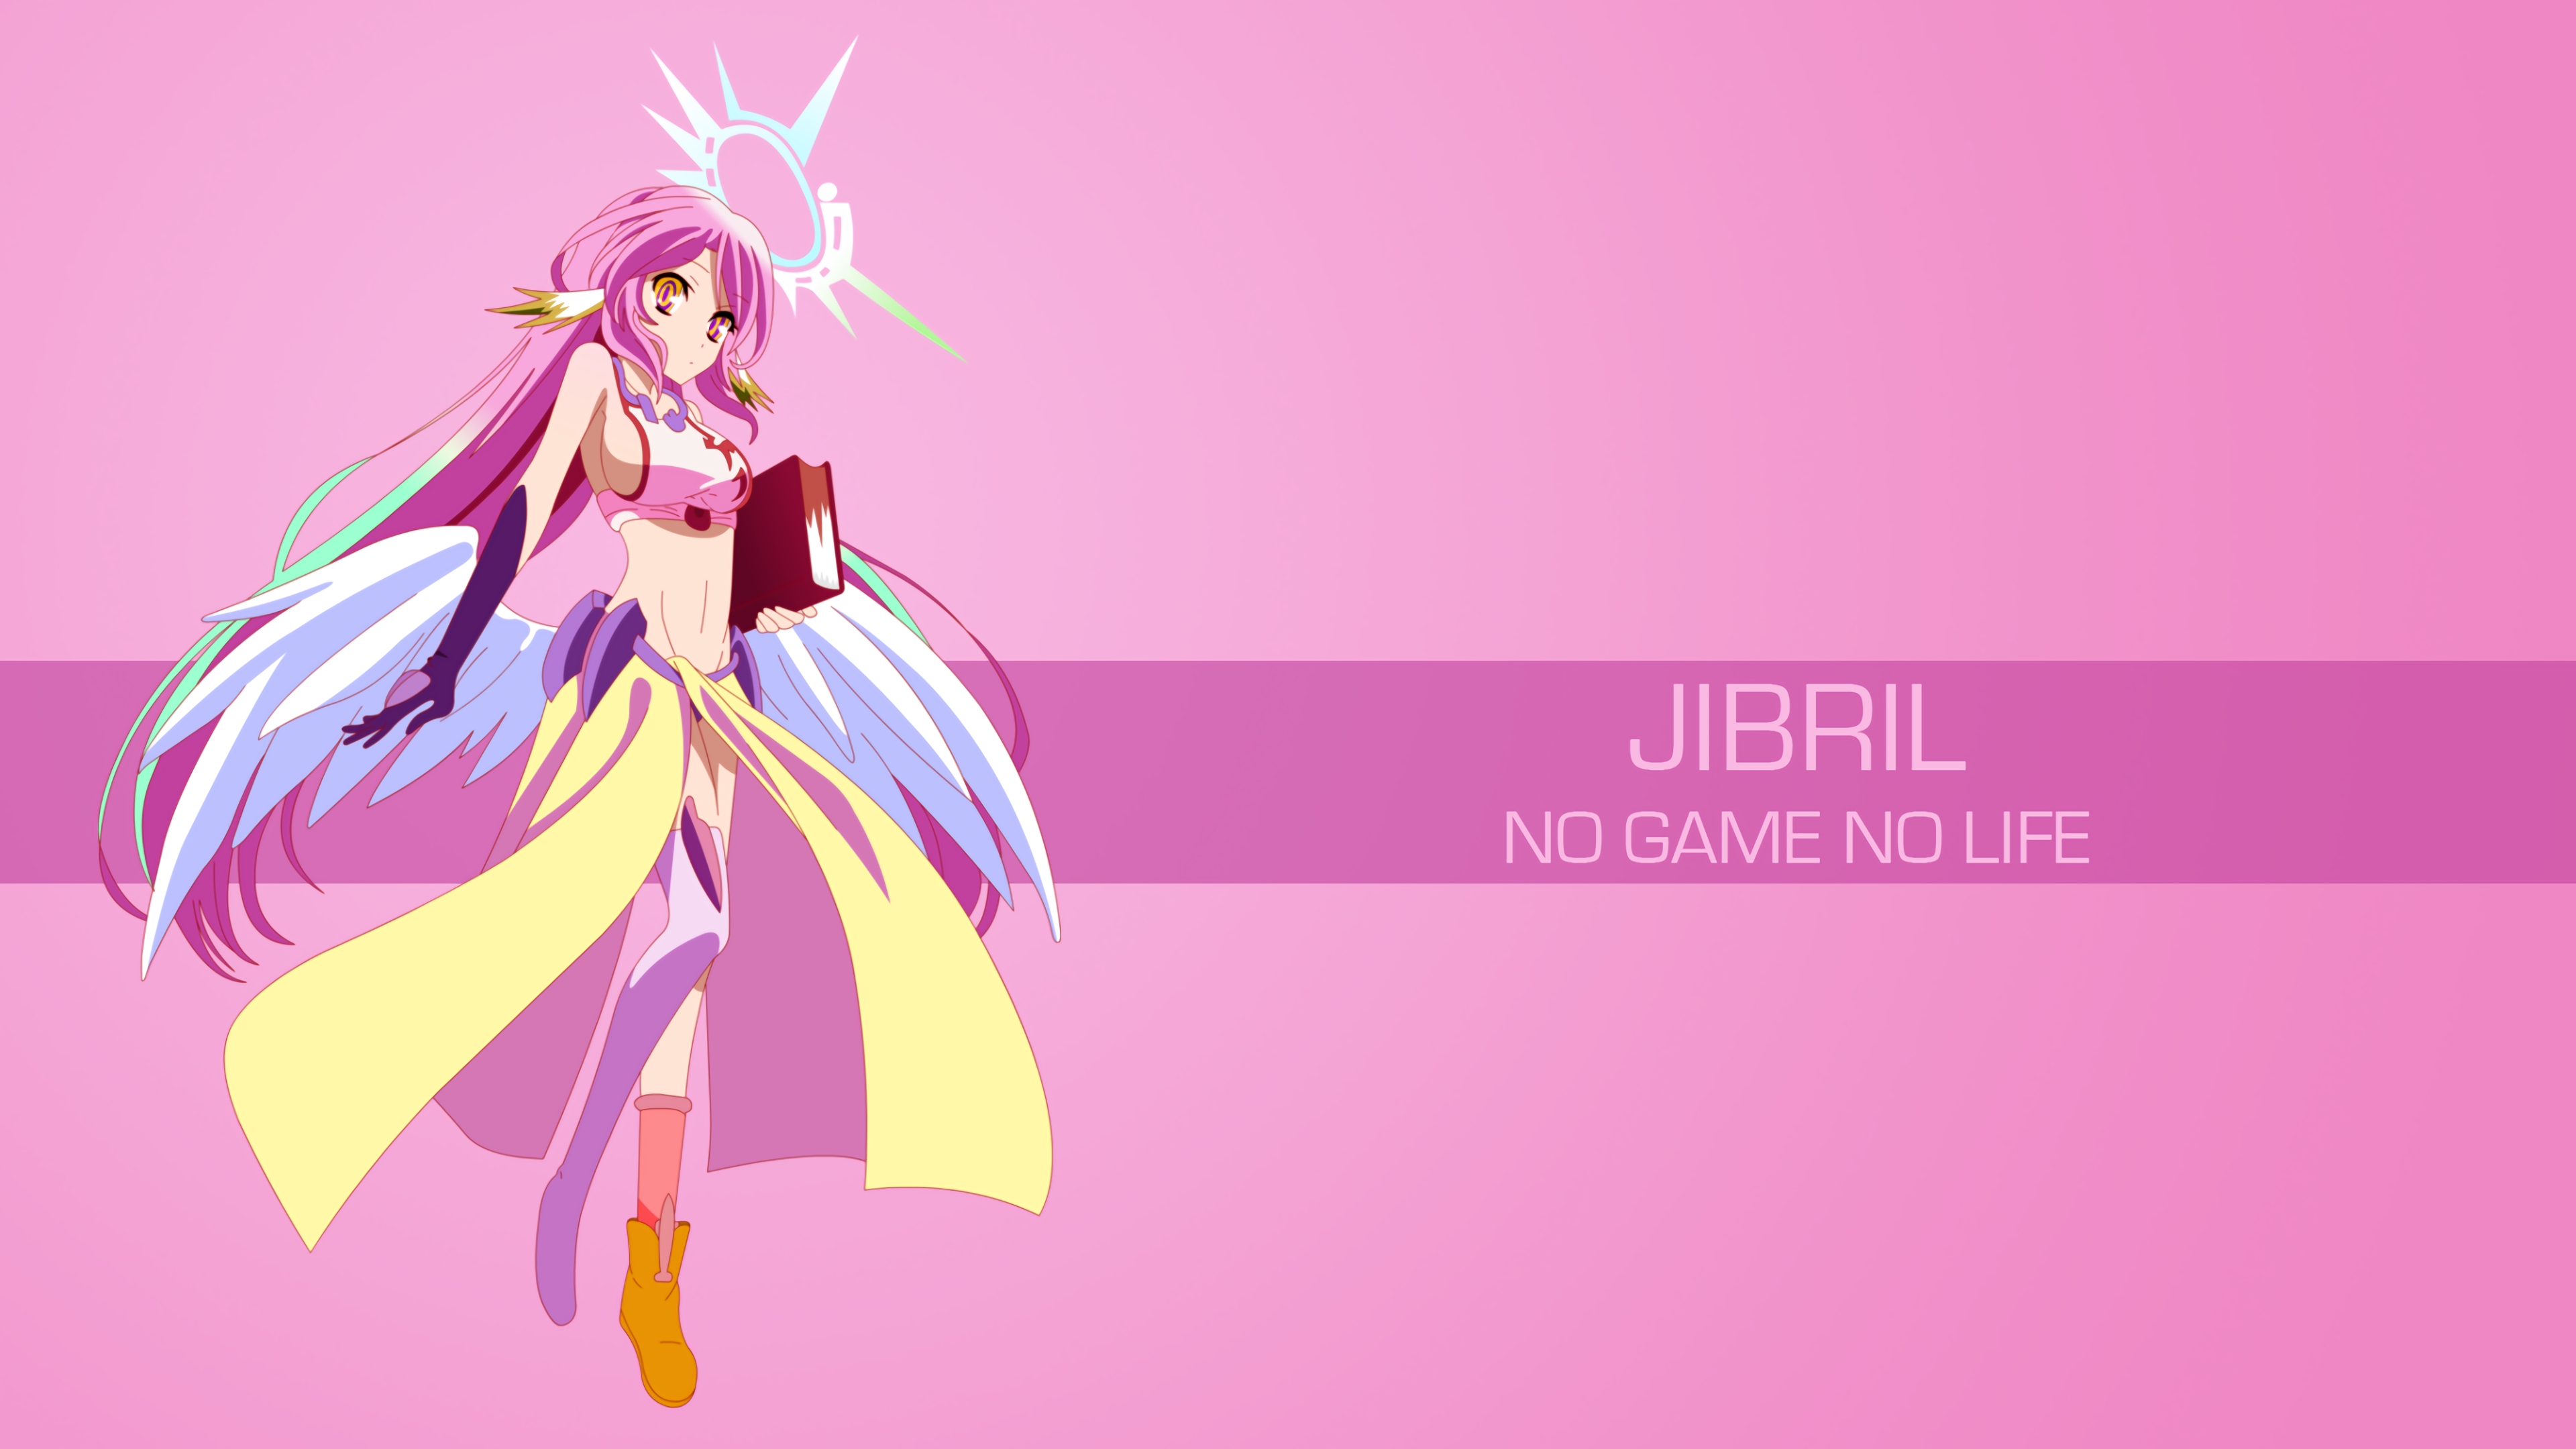 Anime No Game No Life Jibril Hd Wallpapers